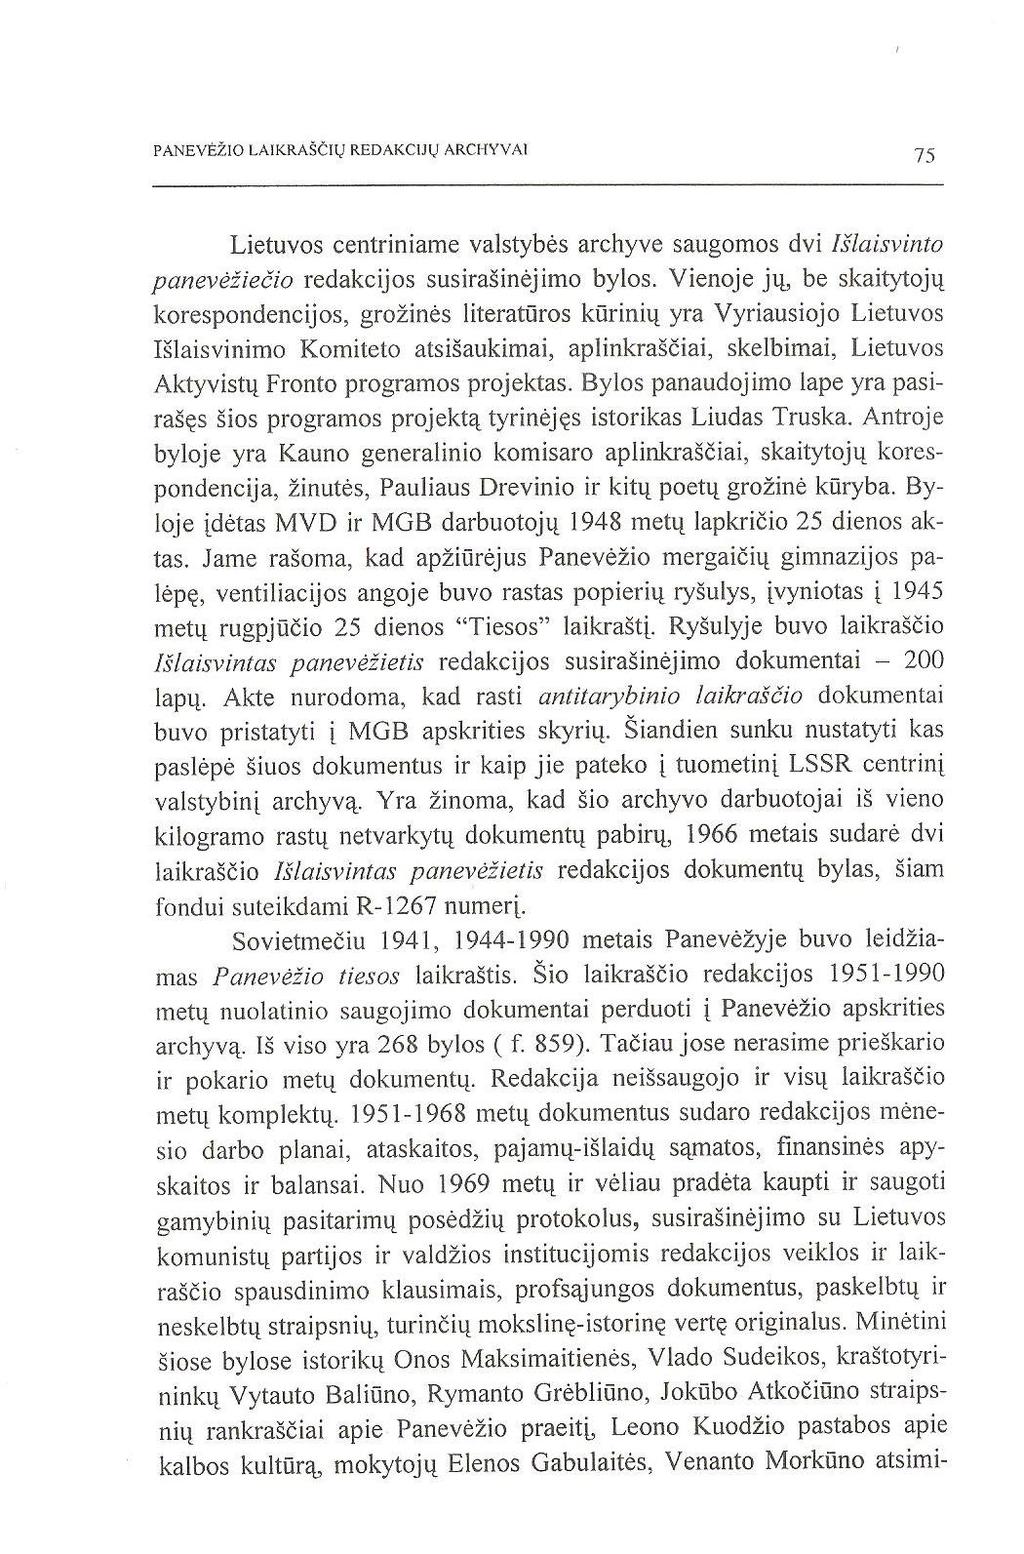 PANEV^lO LAIKRAS&V REDAKCIjy ARCHYVA1 Lietuvos centriniame valstybes archyve saugomos dvi Islaisvinto paneveziecio redakcijos susirasinejimo bylos.